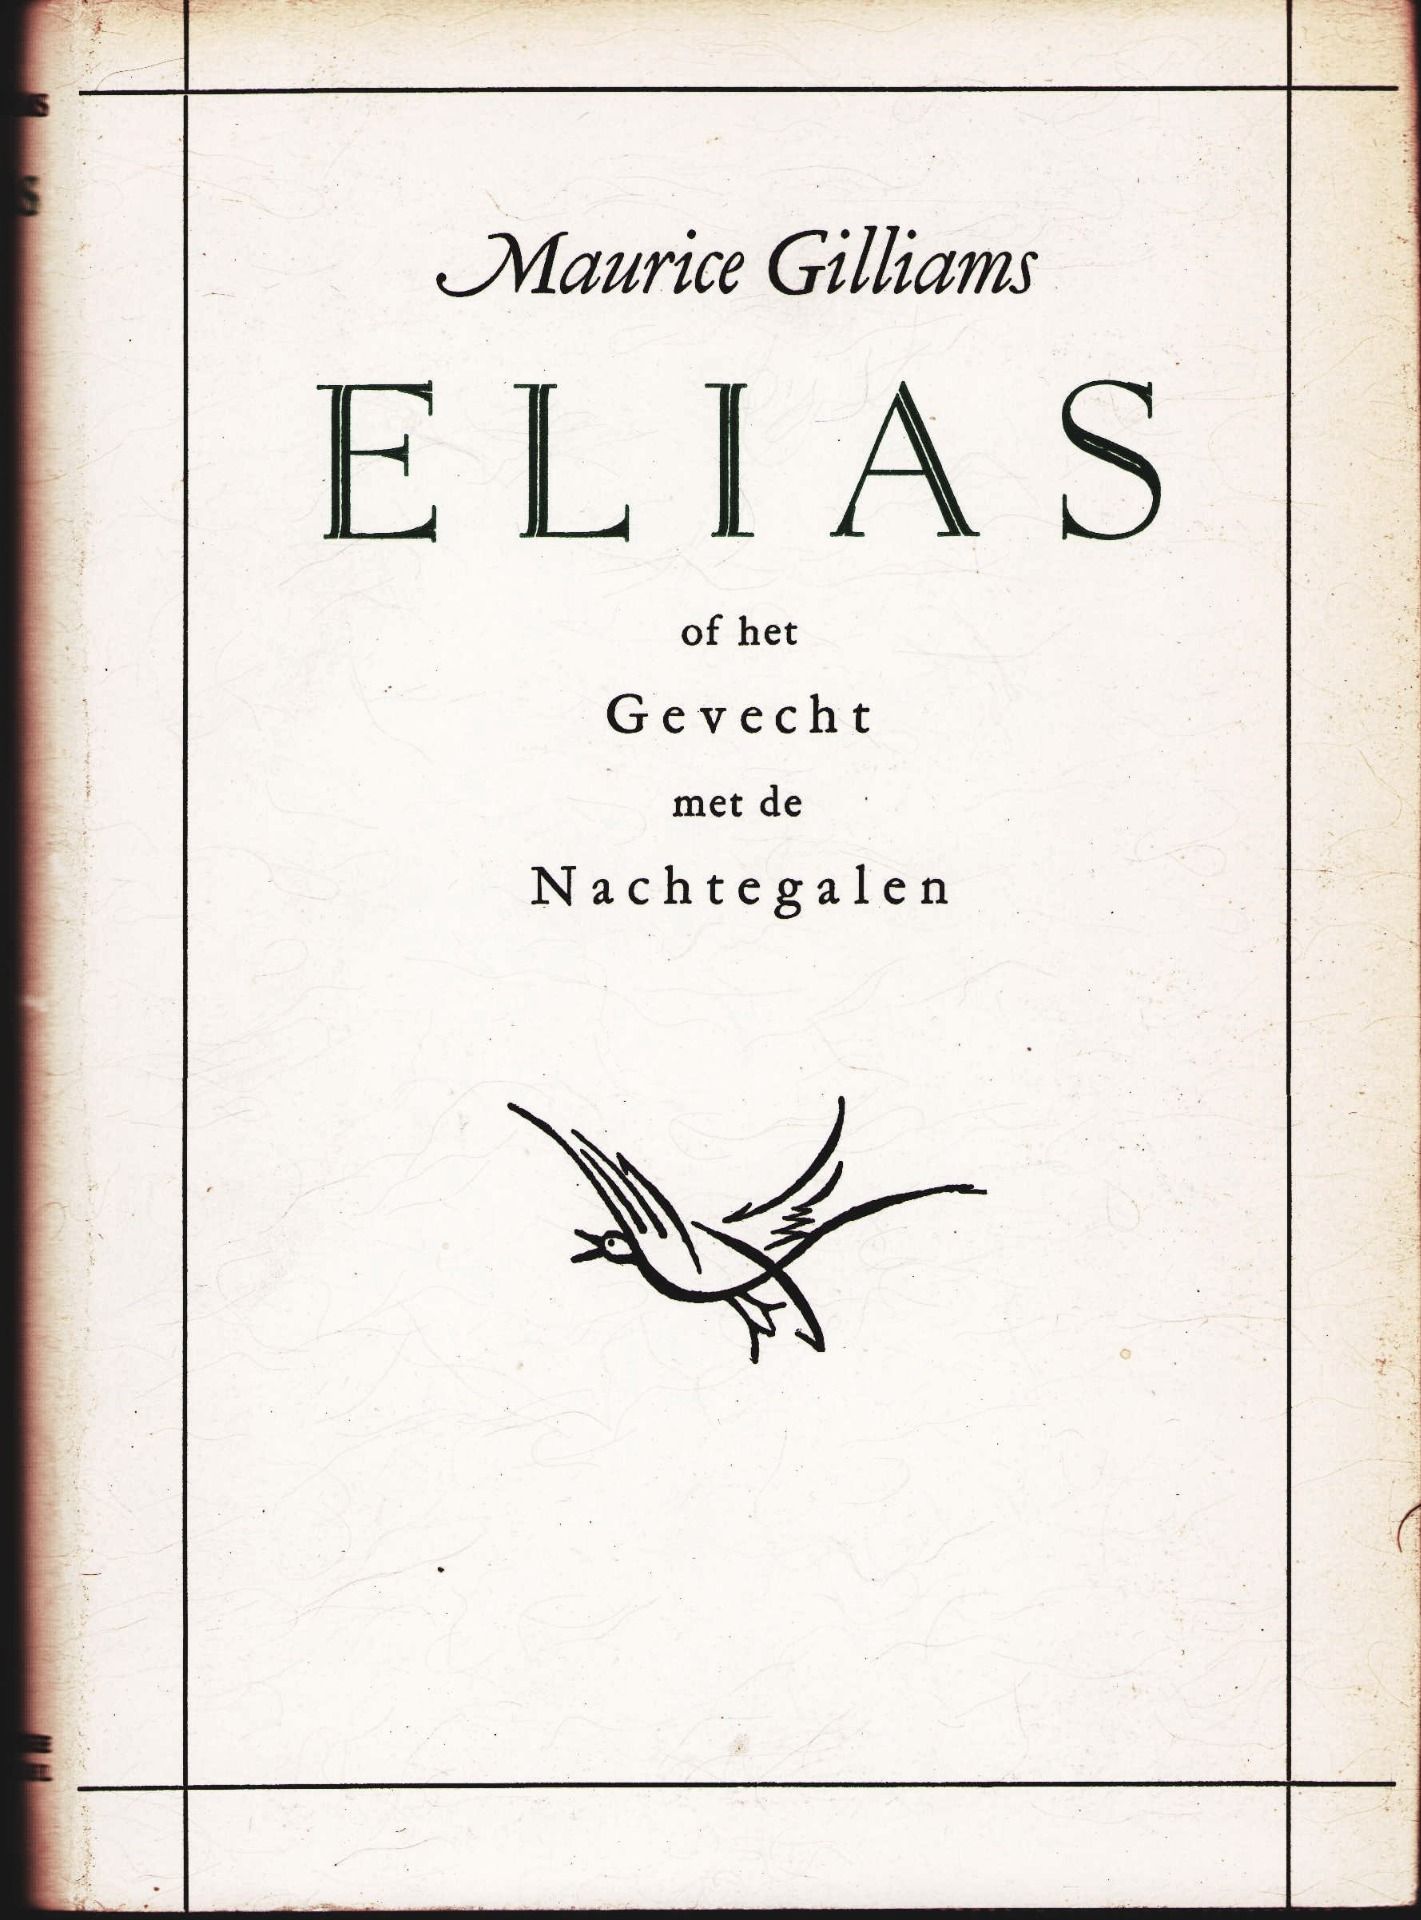 |Literatuur| Gilliams Maurice, "Elias of het Gevecht met de Nachtegalen"1936, eerste druk.